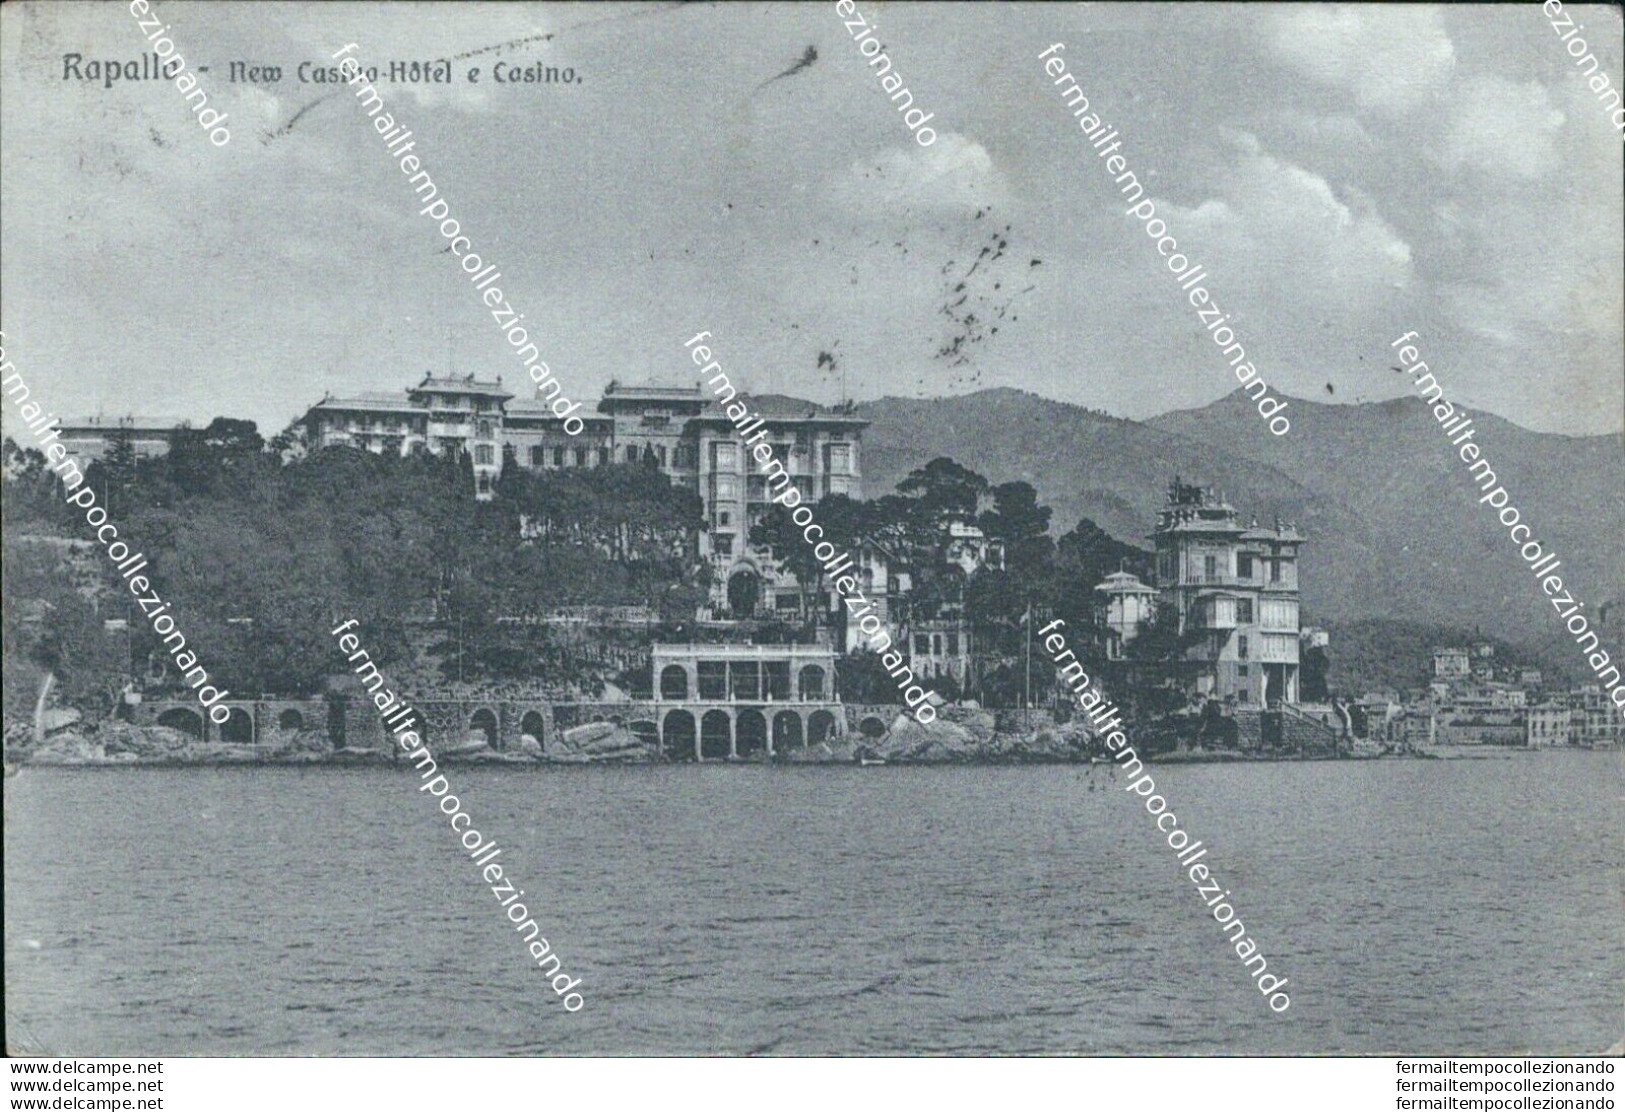 Bq365 Cartolina Rapallo New Casino Hotel E Casino 1911 Provincia Di Genova - Genova (Genoa)